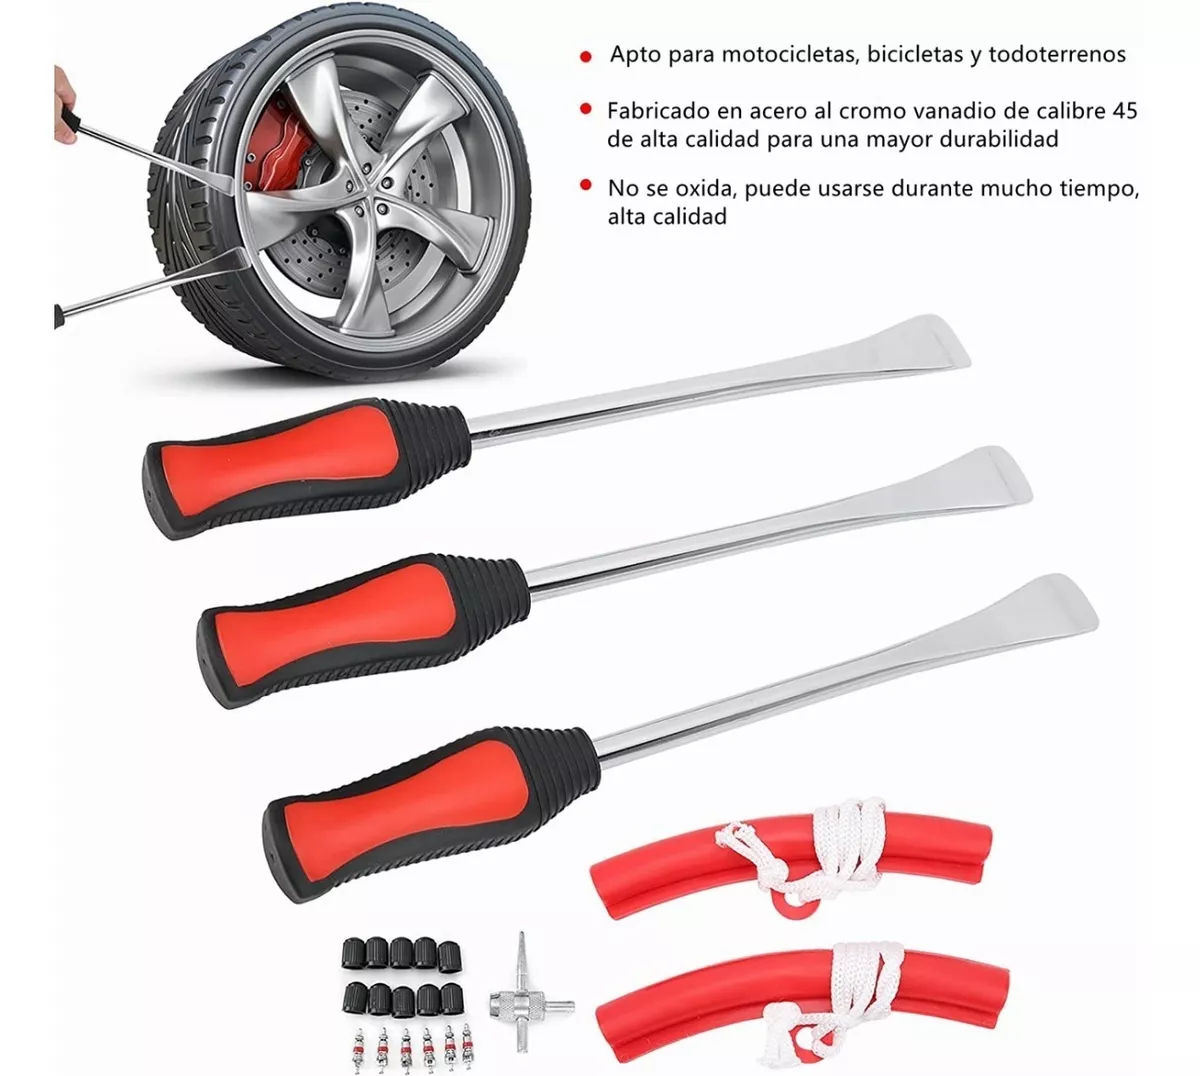 Kit de herramientas para palanca de neumáticos, cucharas y protectores de  llanta de rueda, kit de herramientas para motocicleta, motocross